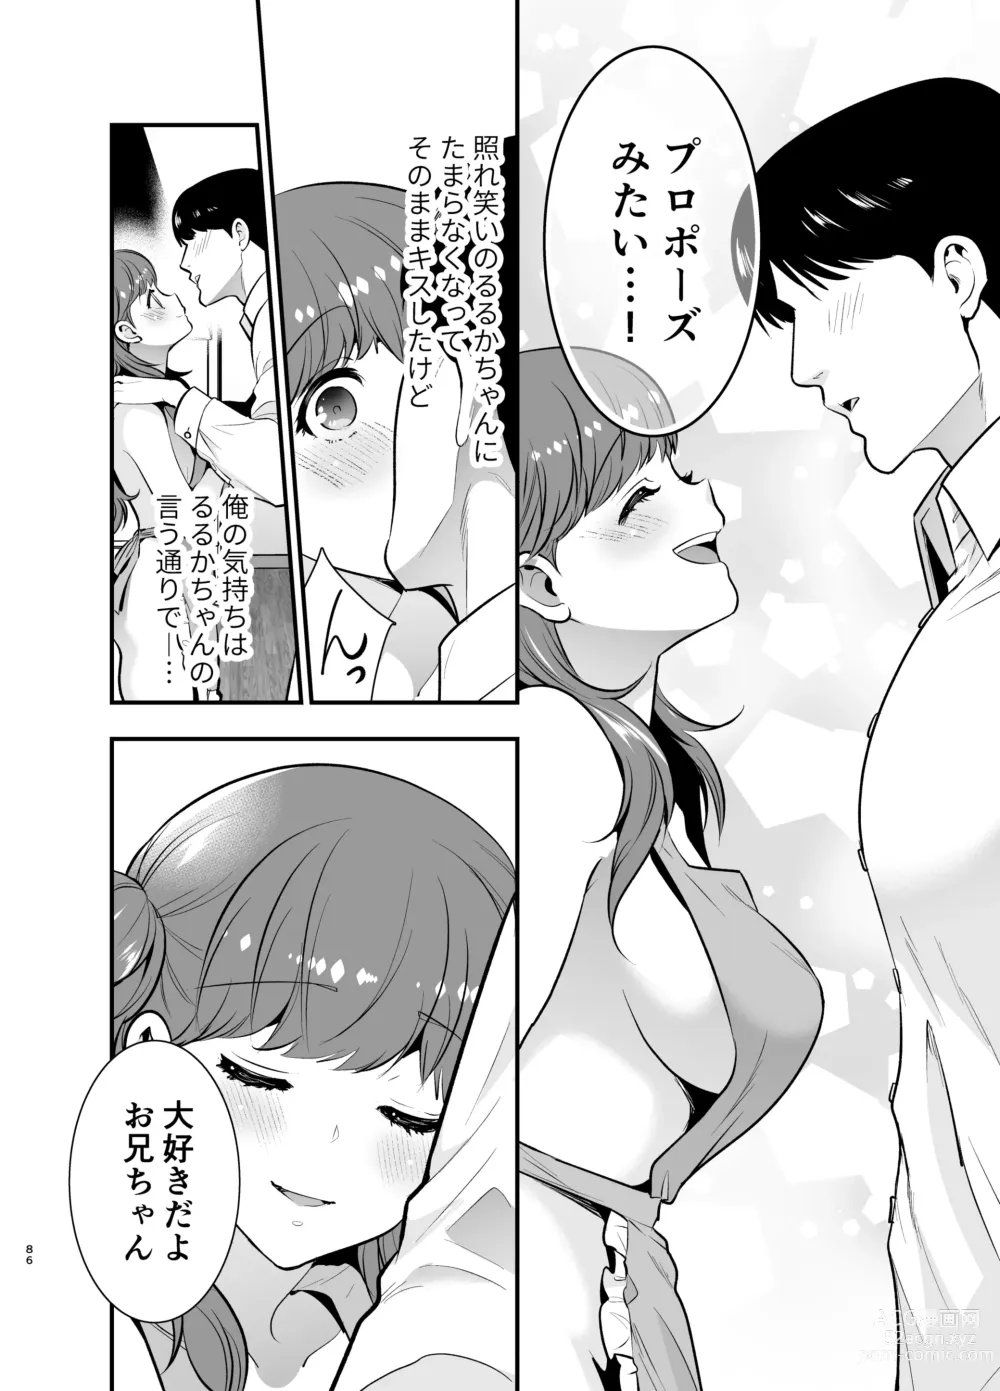 Page 86 of doujinshi Ruruka-chan wa Oshikake Yome!